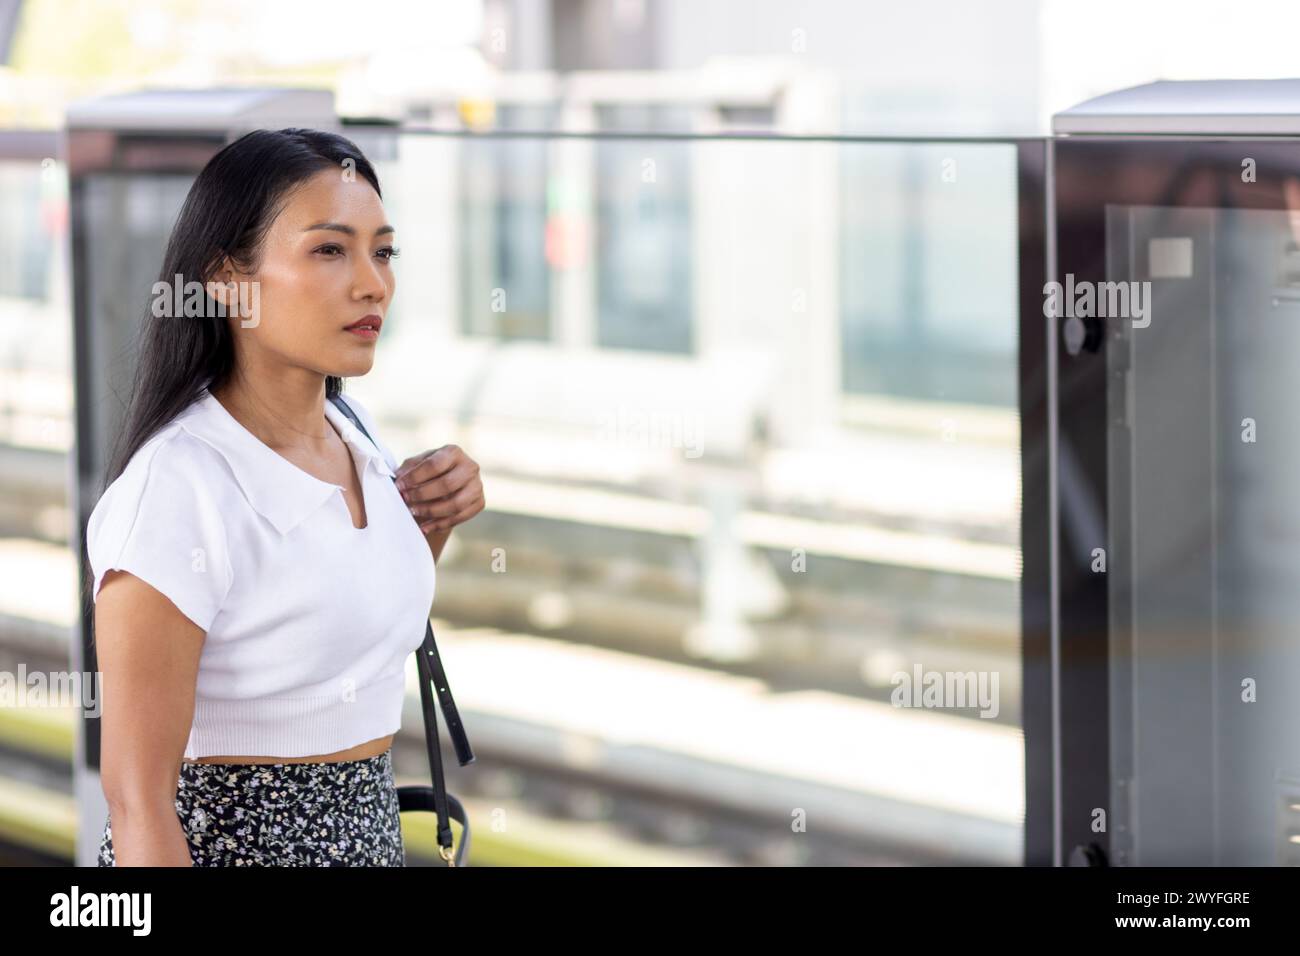 Jeune femme attendant un train sur un quai avec une barrière de protection Banque D'Images